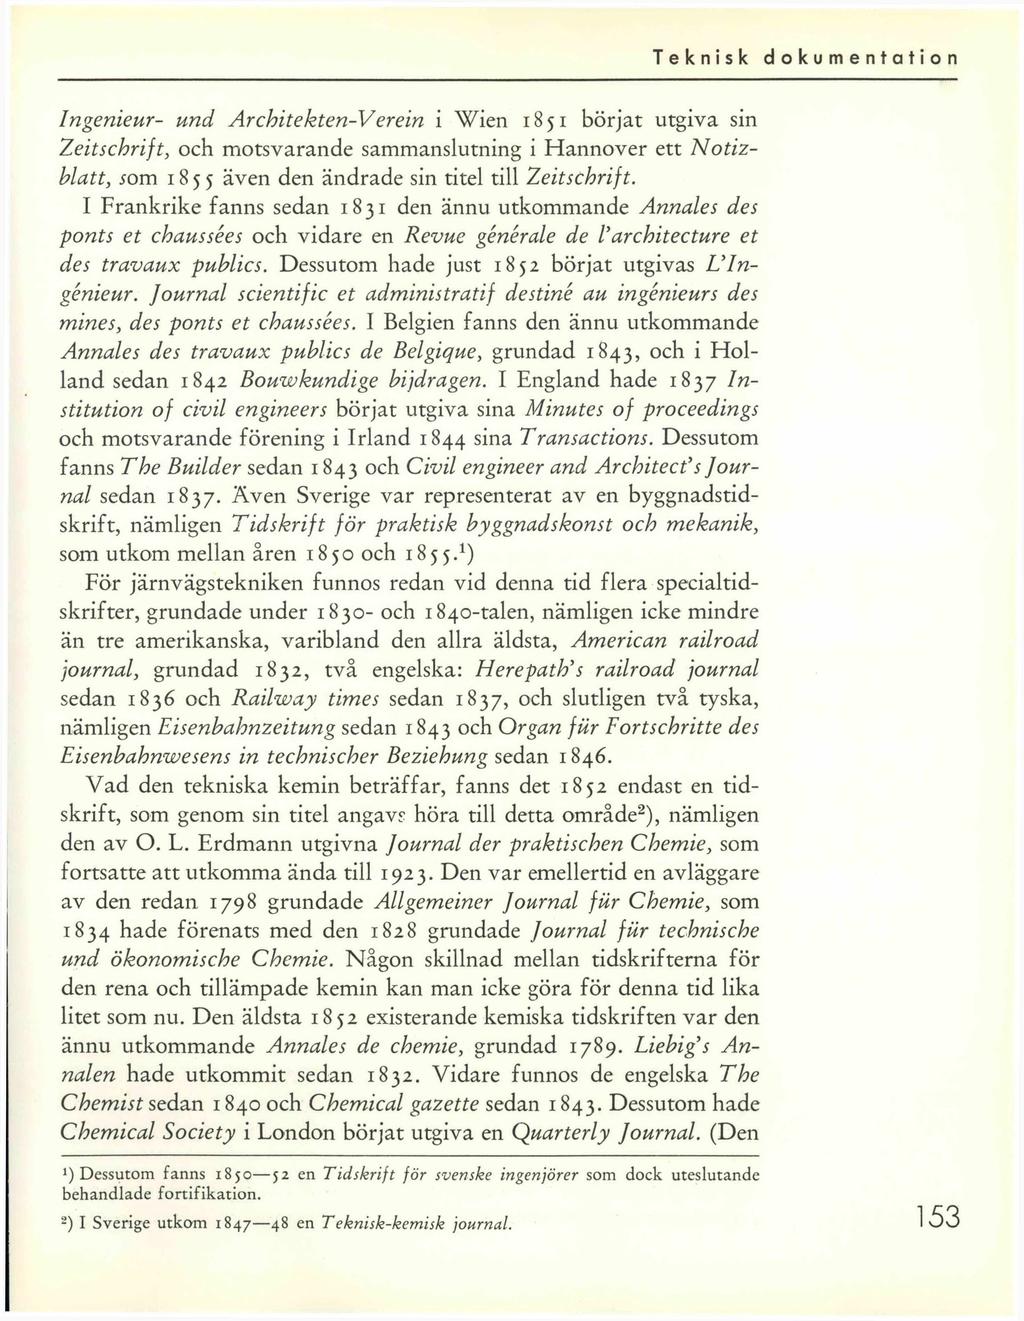 Ingenieur- und Architekten-Verein i Wien 1851 börjat utgiva sin Zeitschrift, och motsvarande sammanslutning i Hannover ett Notizhlatt, 50m 1855 även den ändrade sin titel till Zeitschrift.